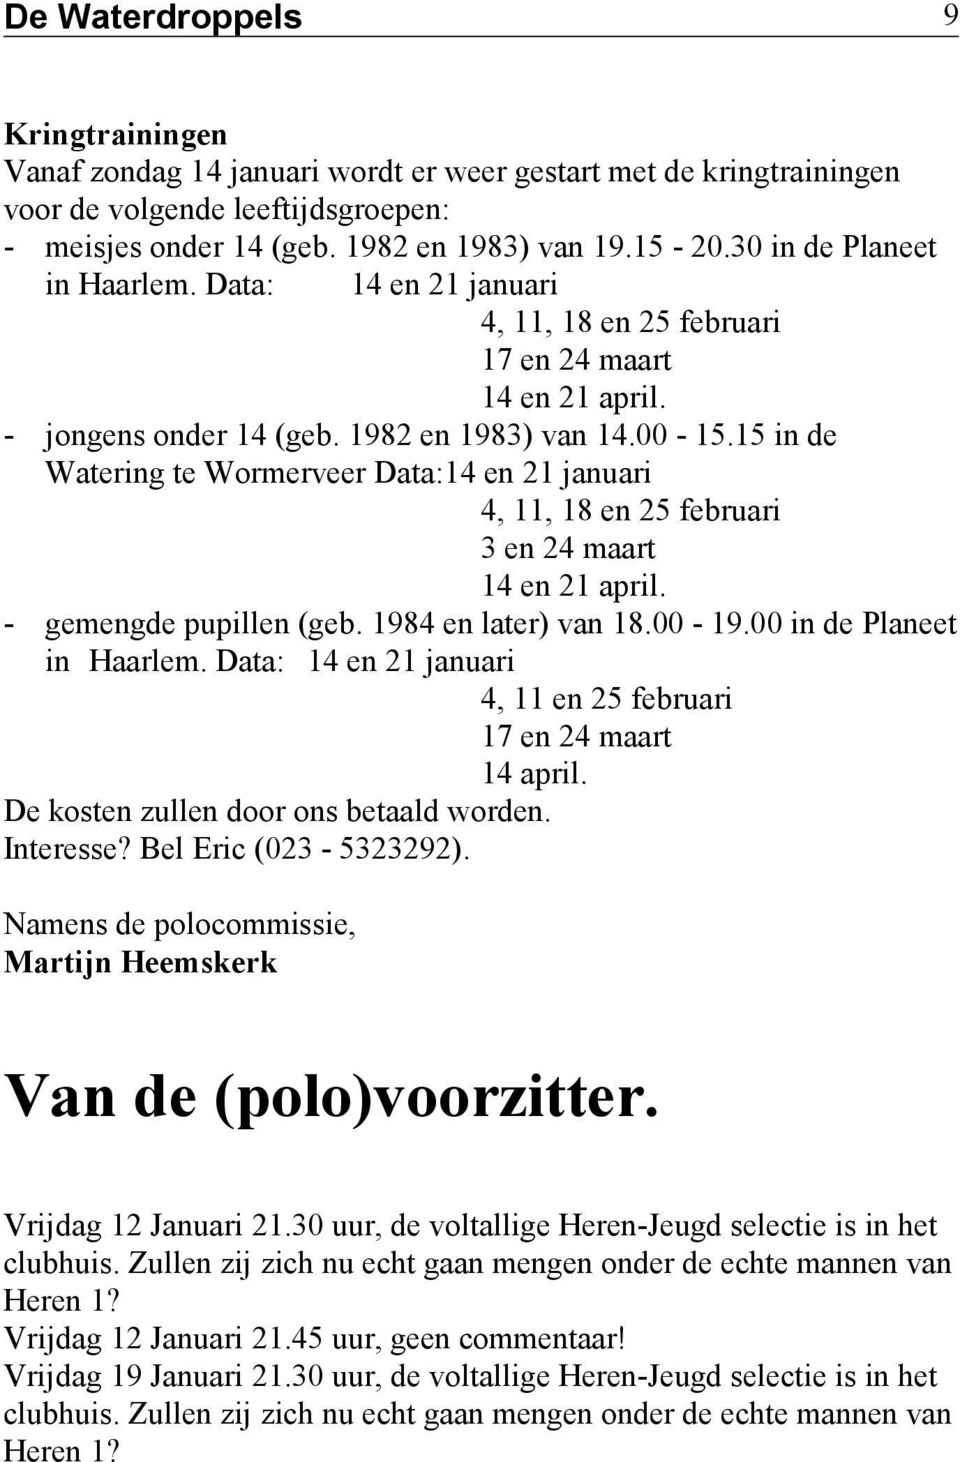 15 in de Watering te Wormerveer Data:14 en 21 januari 4, 11, 18 en 25 februari 3 en 24 maart 14 en 21 april. - gemengde pupillen (geb. 1984 en later) van 18.00-19.00 in de Planeet in Haarlem.